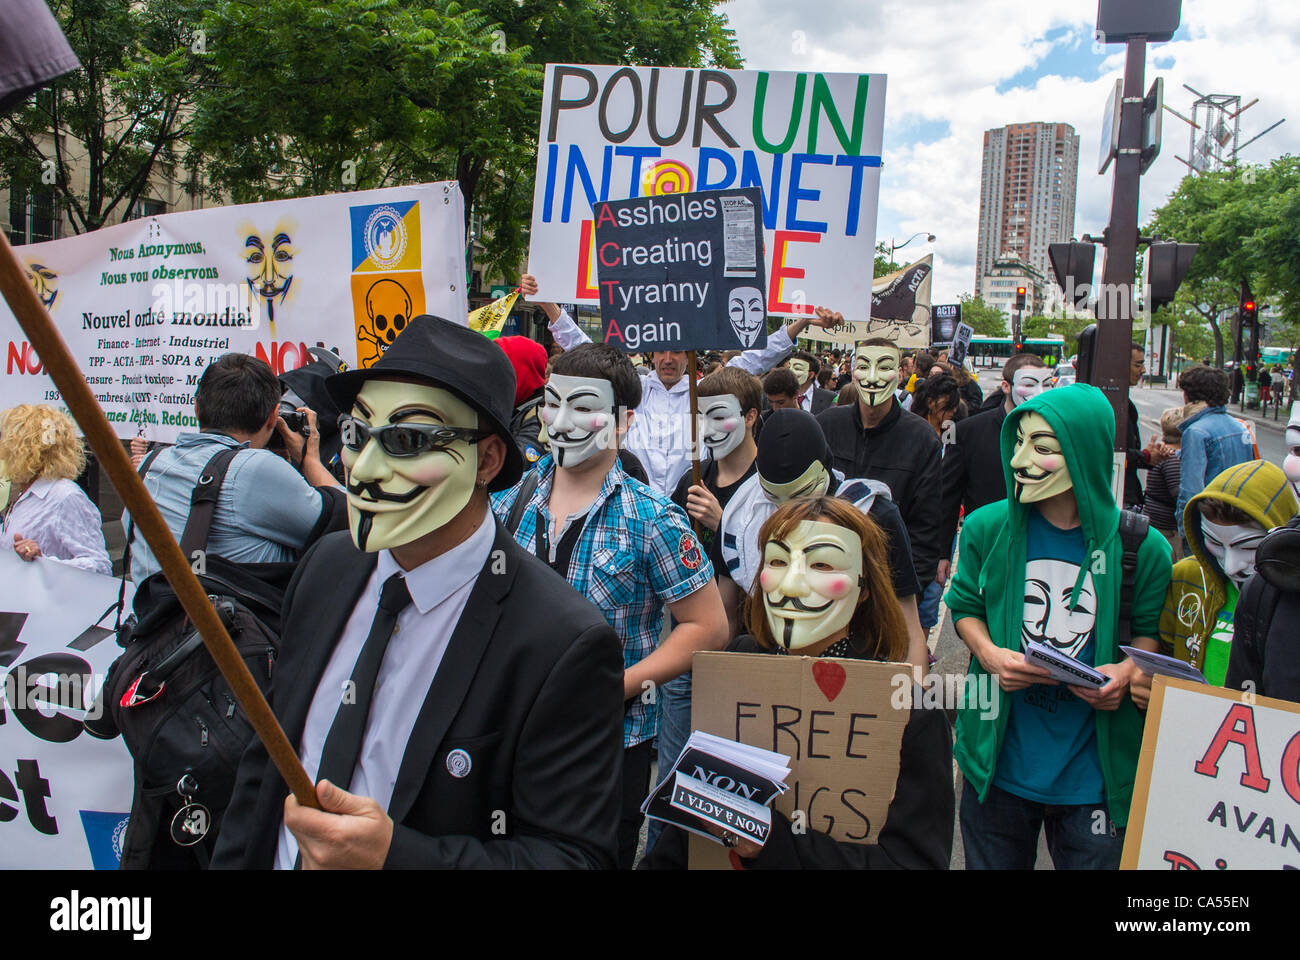 Les militants d'une loi anti-ACTA sur les accords Internet, qui s'opposent au contrôle des communications et à la censure des réseaux Internet, qui tiennent des panneaux de protestation et portent des masques Guy Fawklin, lors d'une manifestation à Paris, en France, protestent contre le libre-échange et les jeunes protestent Banque D'Images